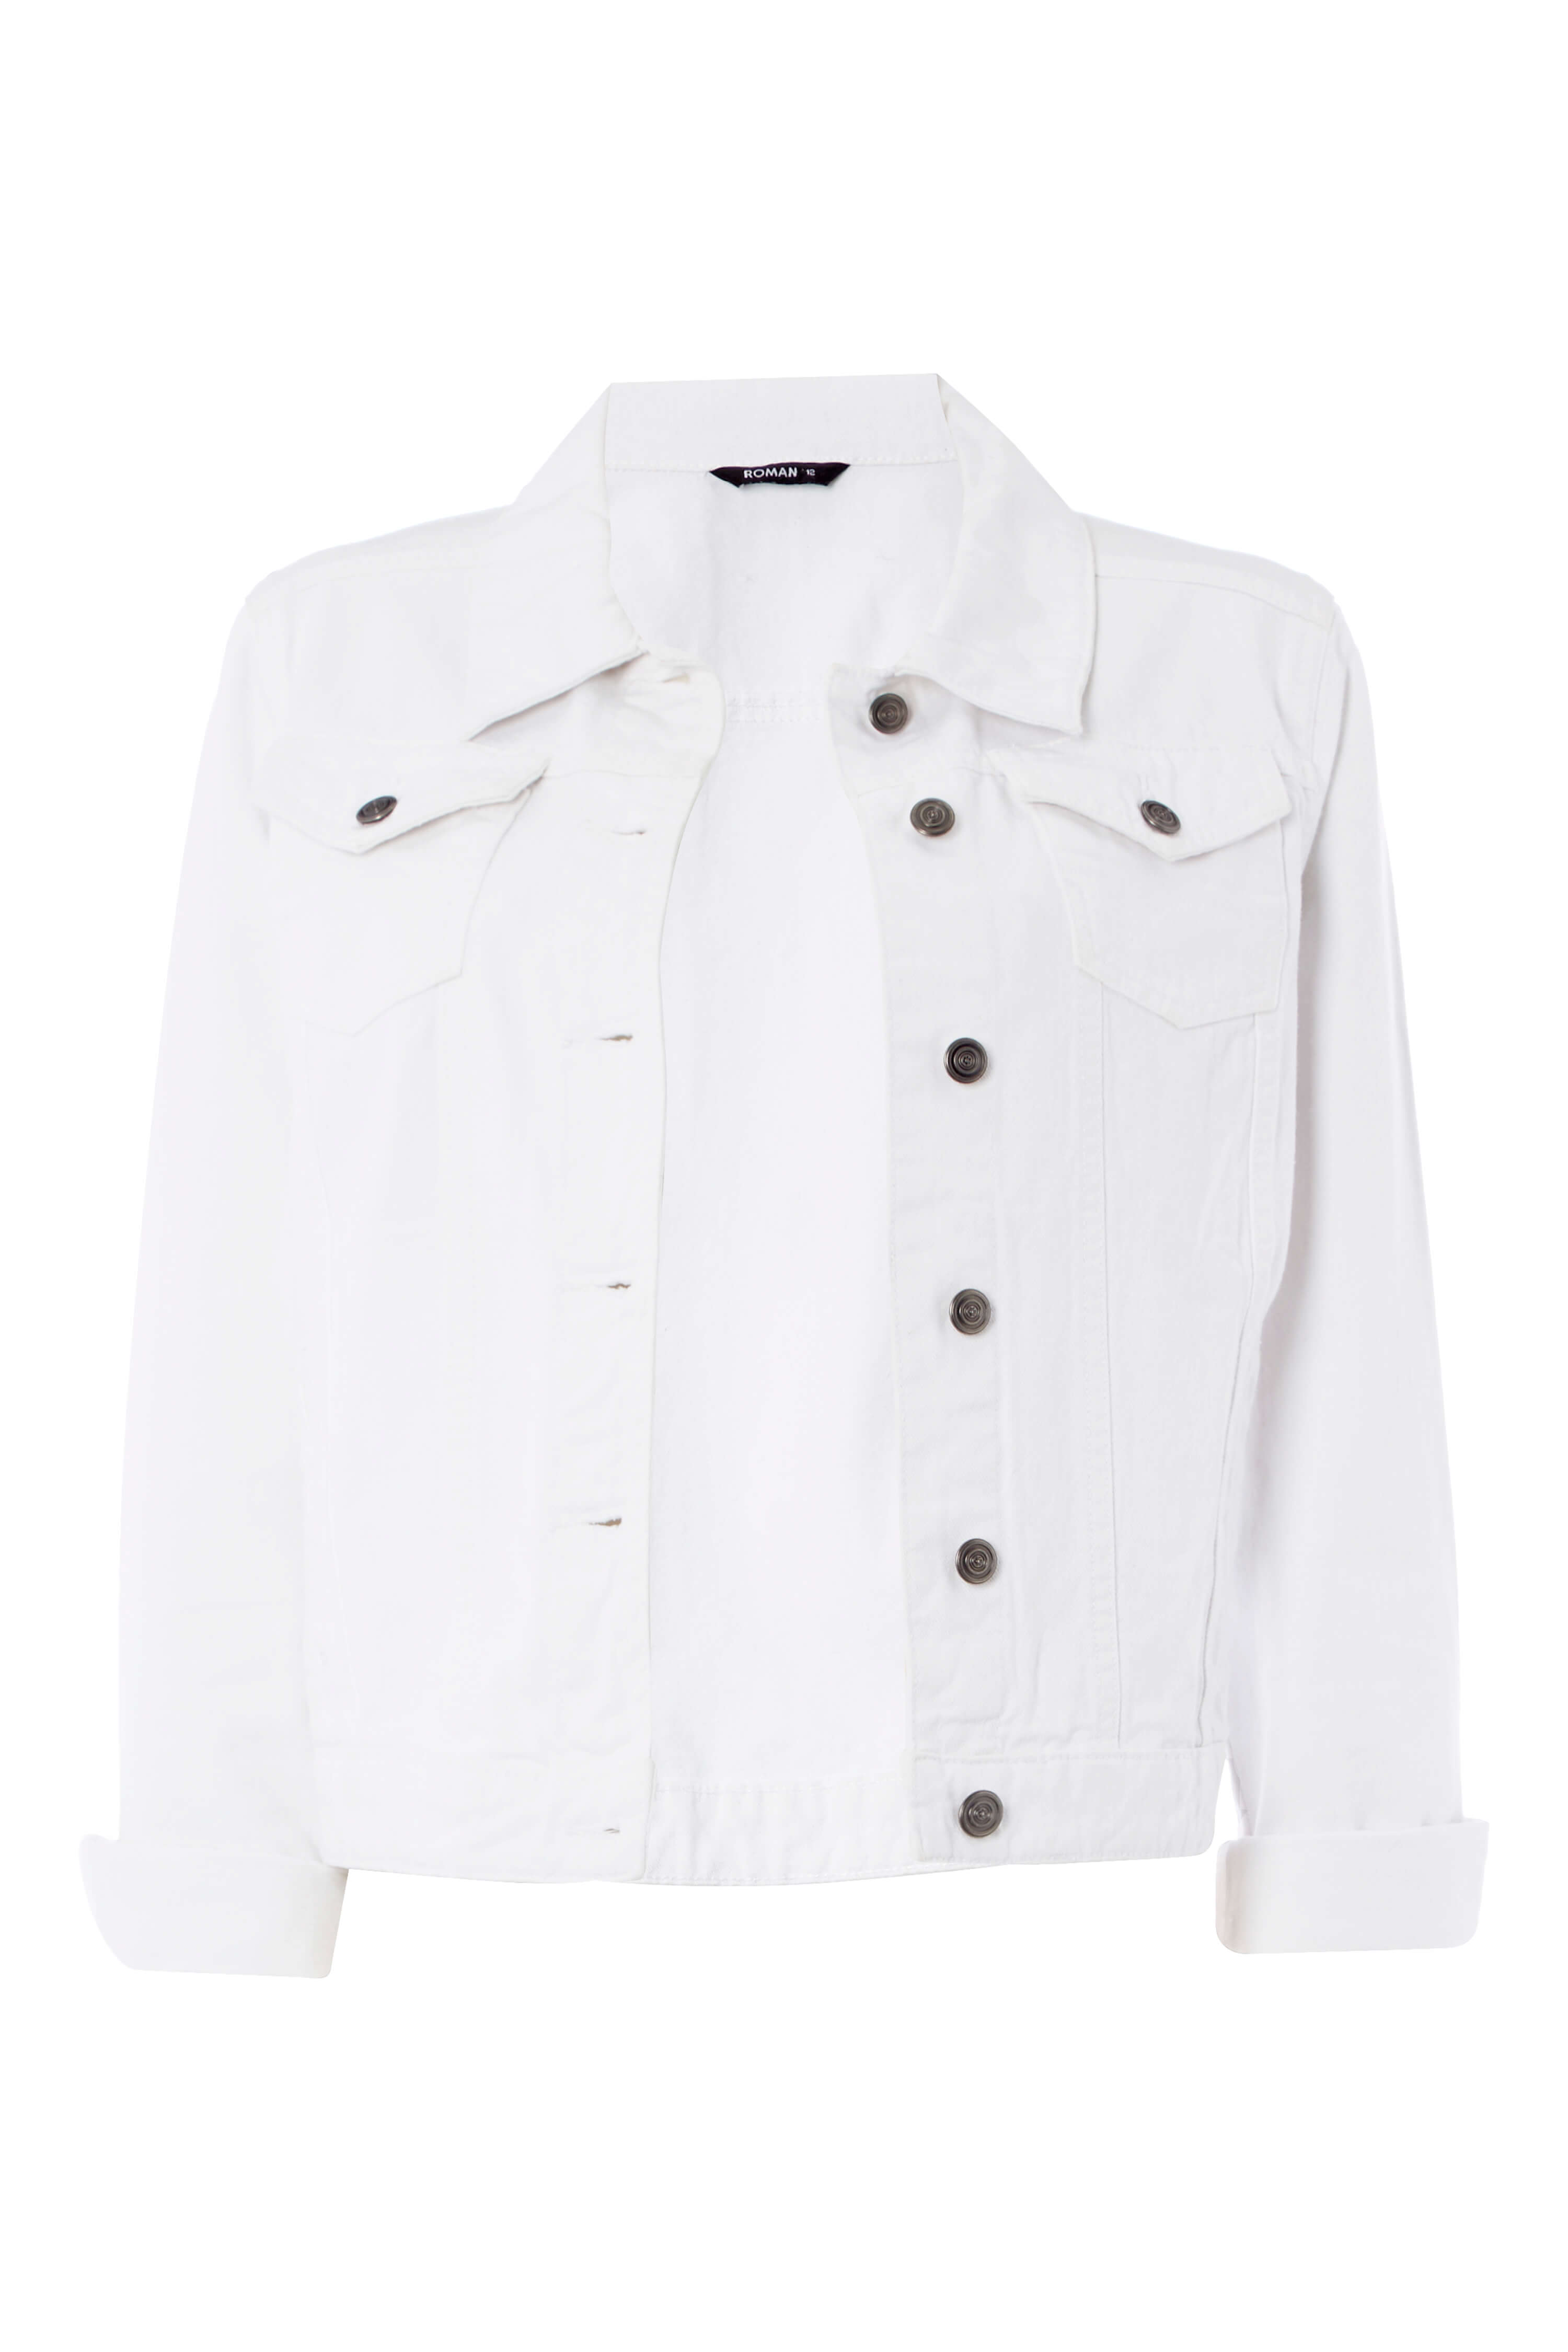 roman white jacket